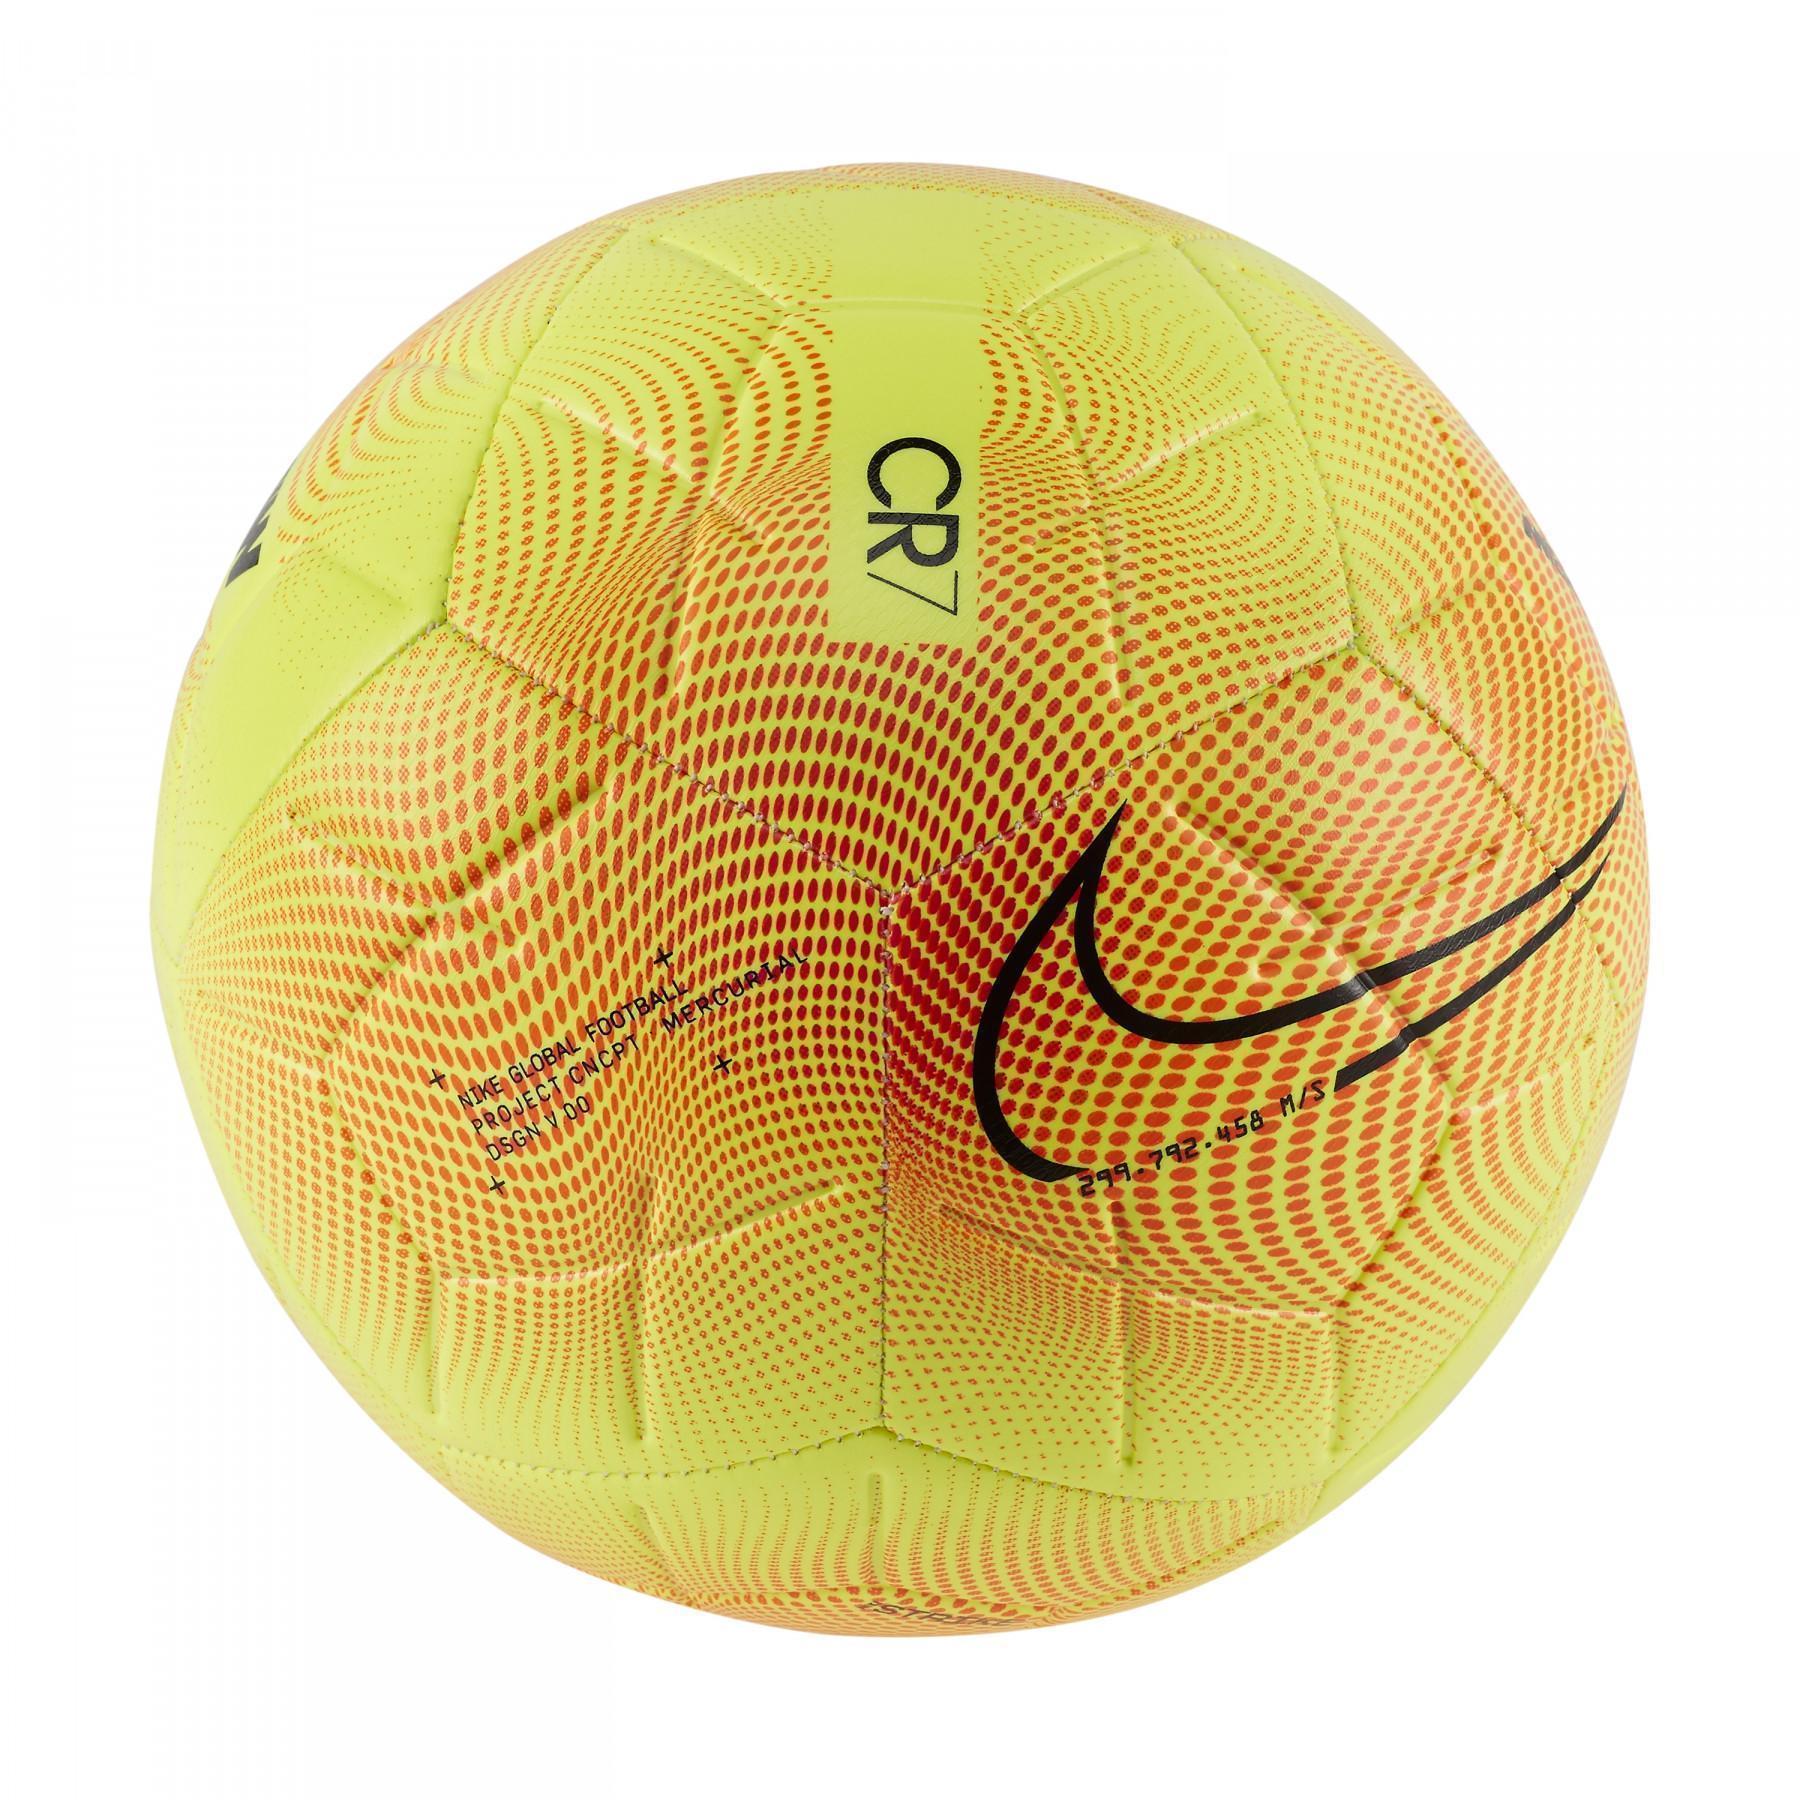 Ballon Nike M Series Strike